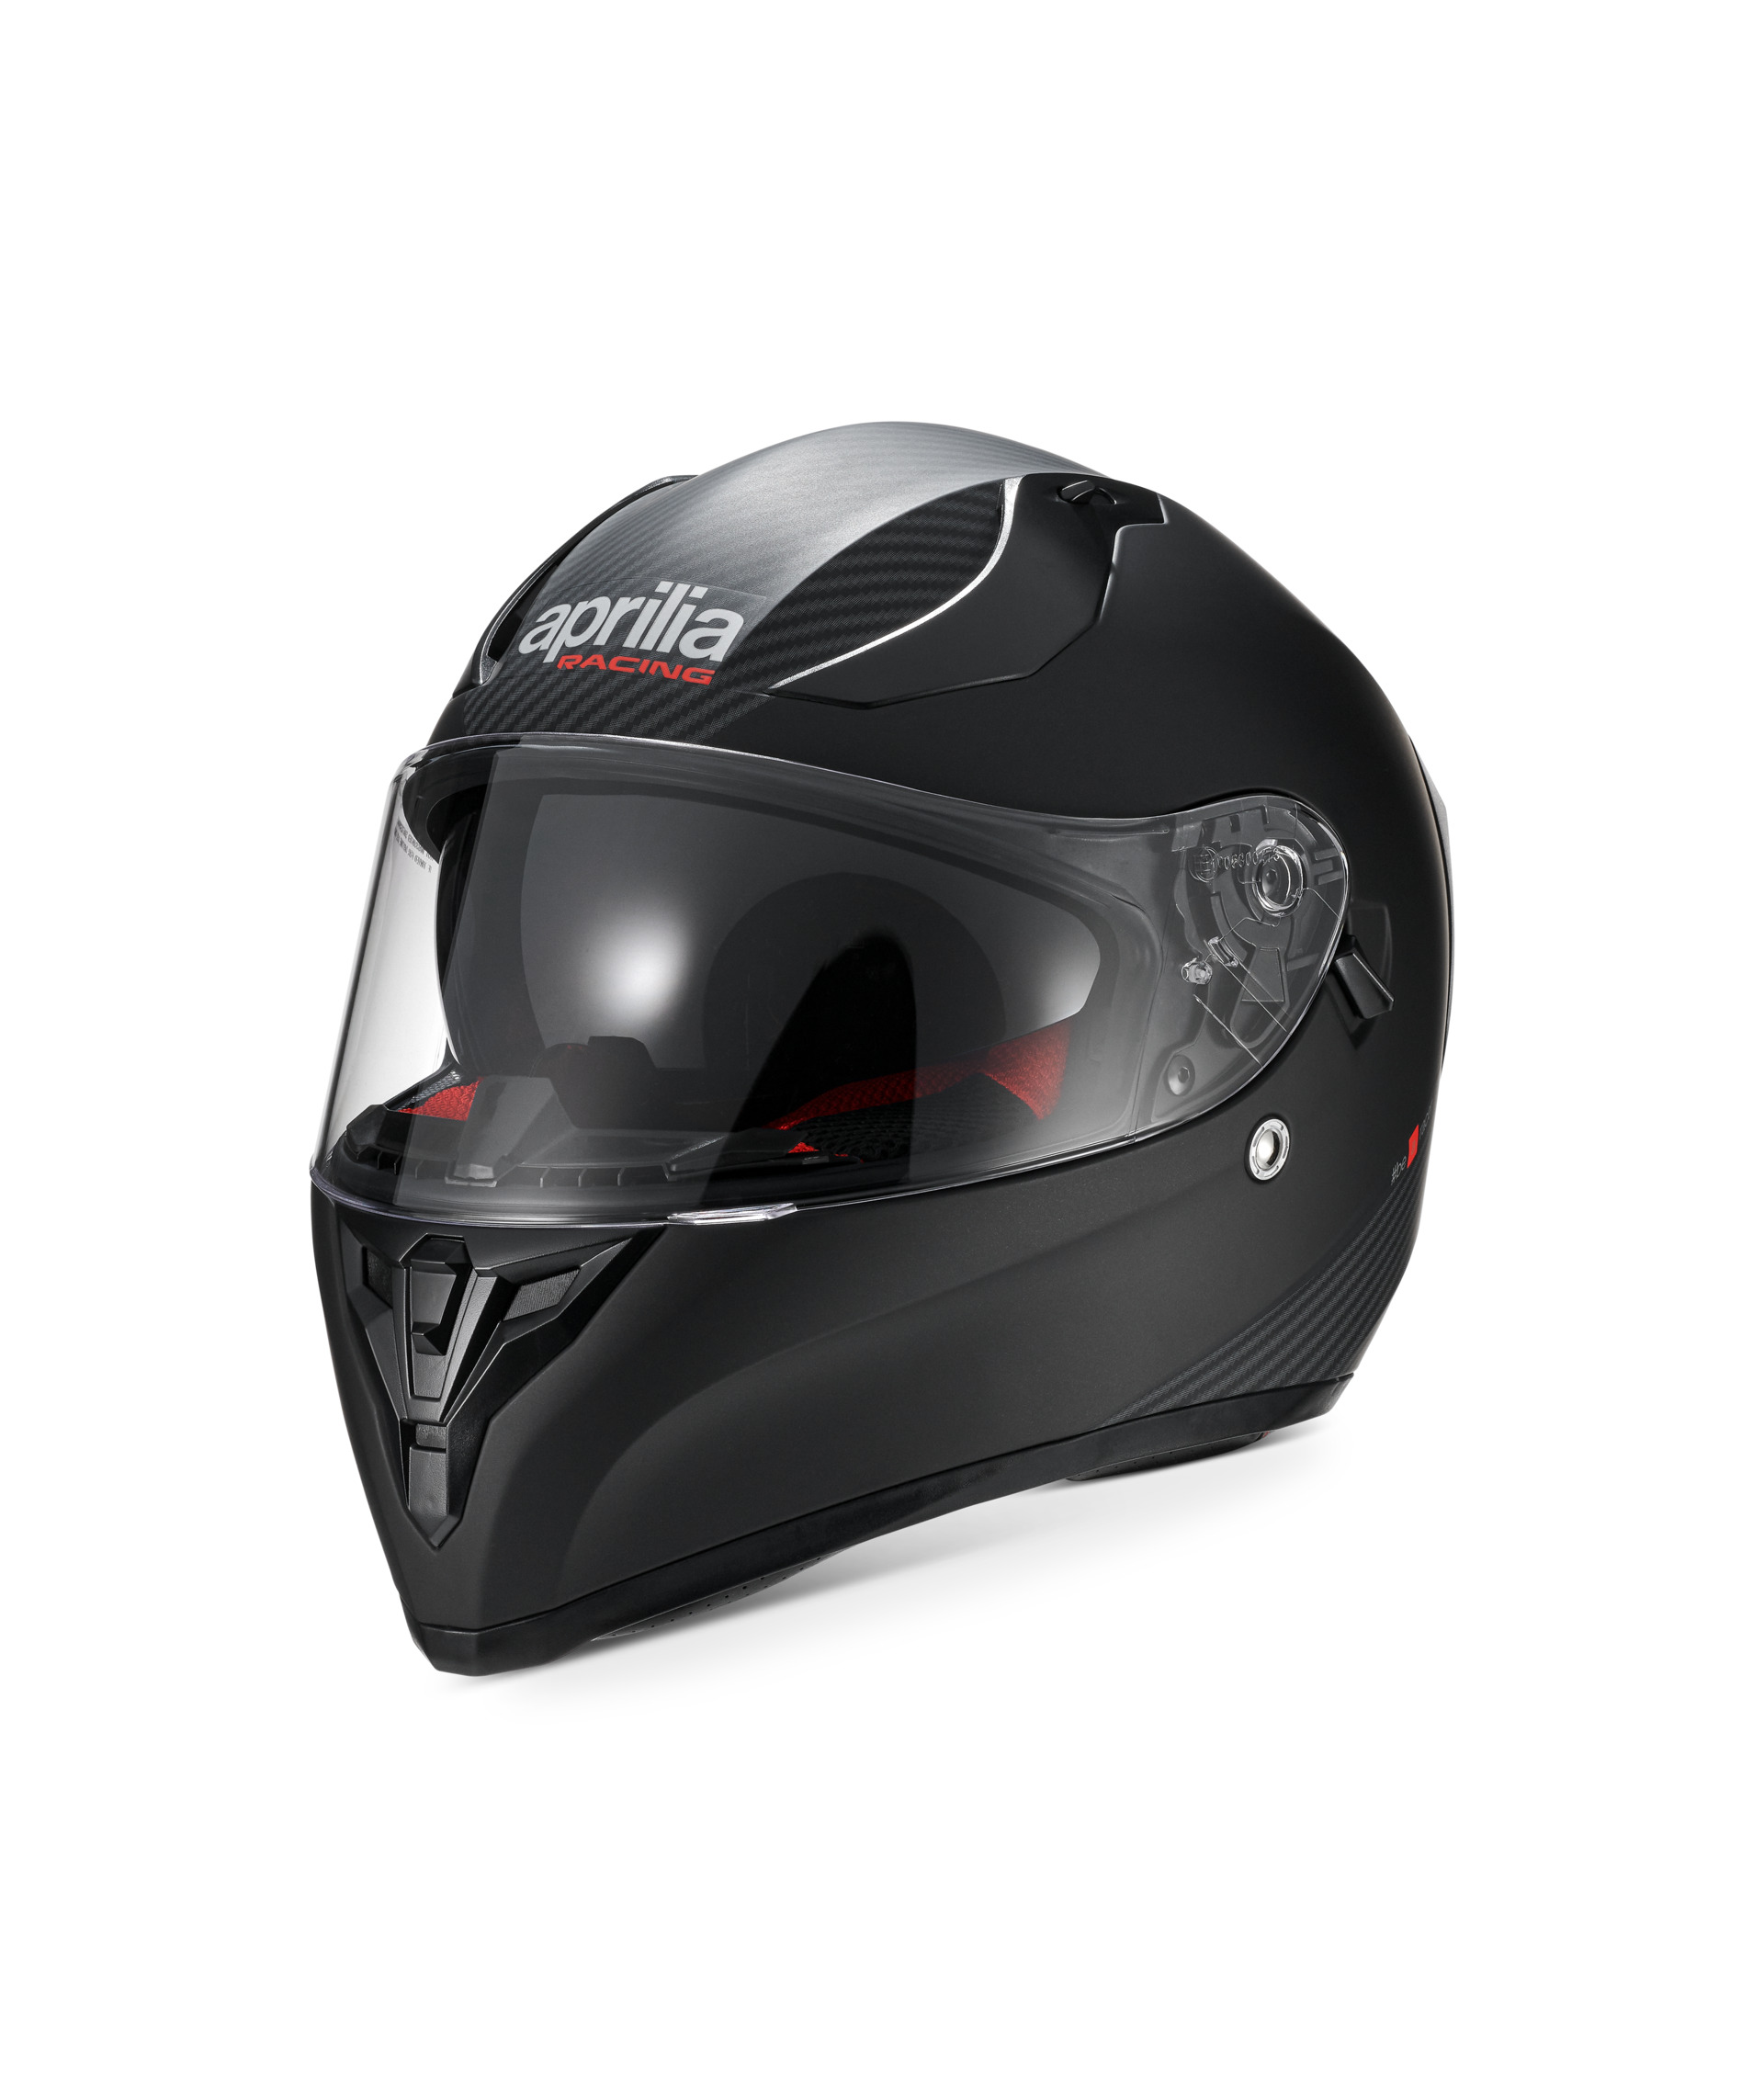 Apriliaオープンフェイスヘルメット 607826MSG サイズ : M ...